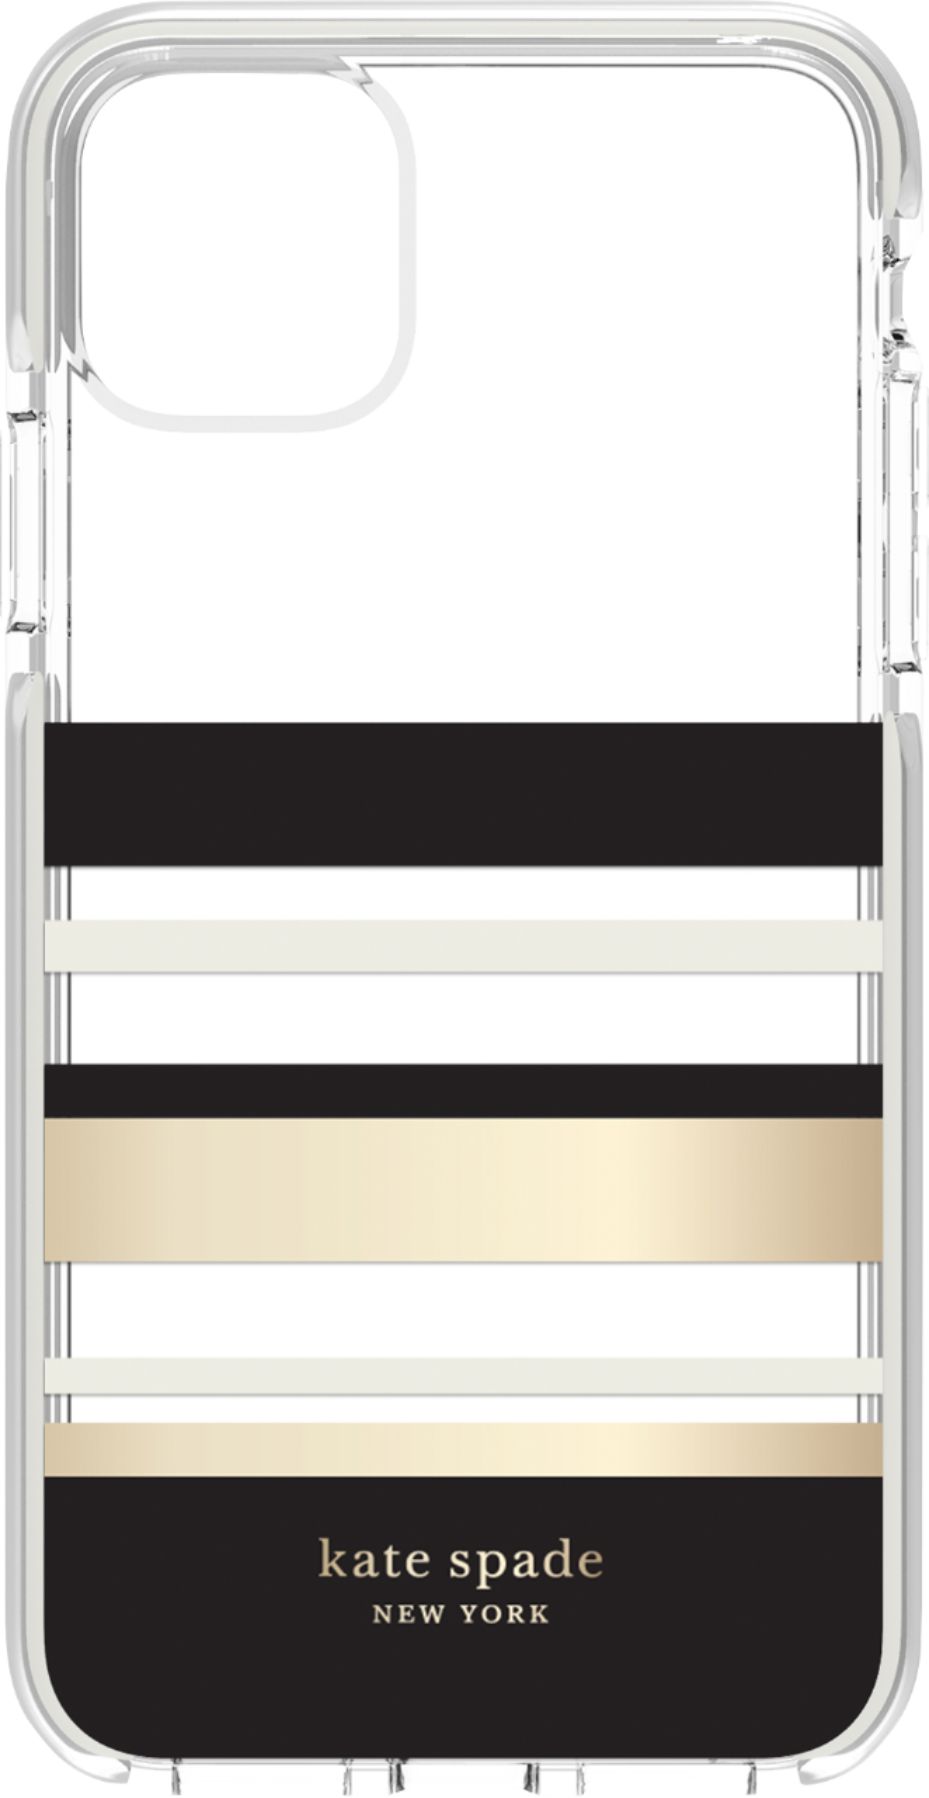 Kate Spade New York Defensive Hardshell Case For Apple Iphone 11 Pro Max Black Clear Cream Park Stripe Gold Foil Ksiph 135 Psbgc Best Buy